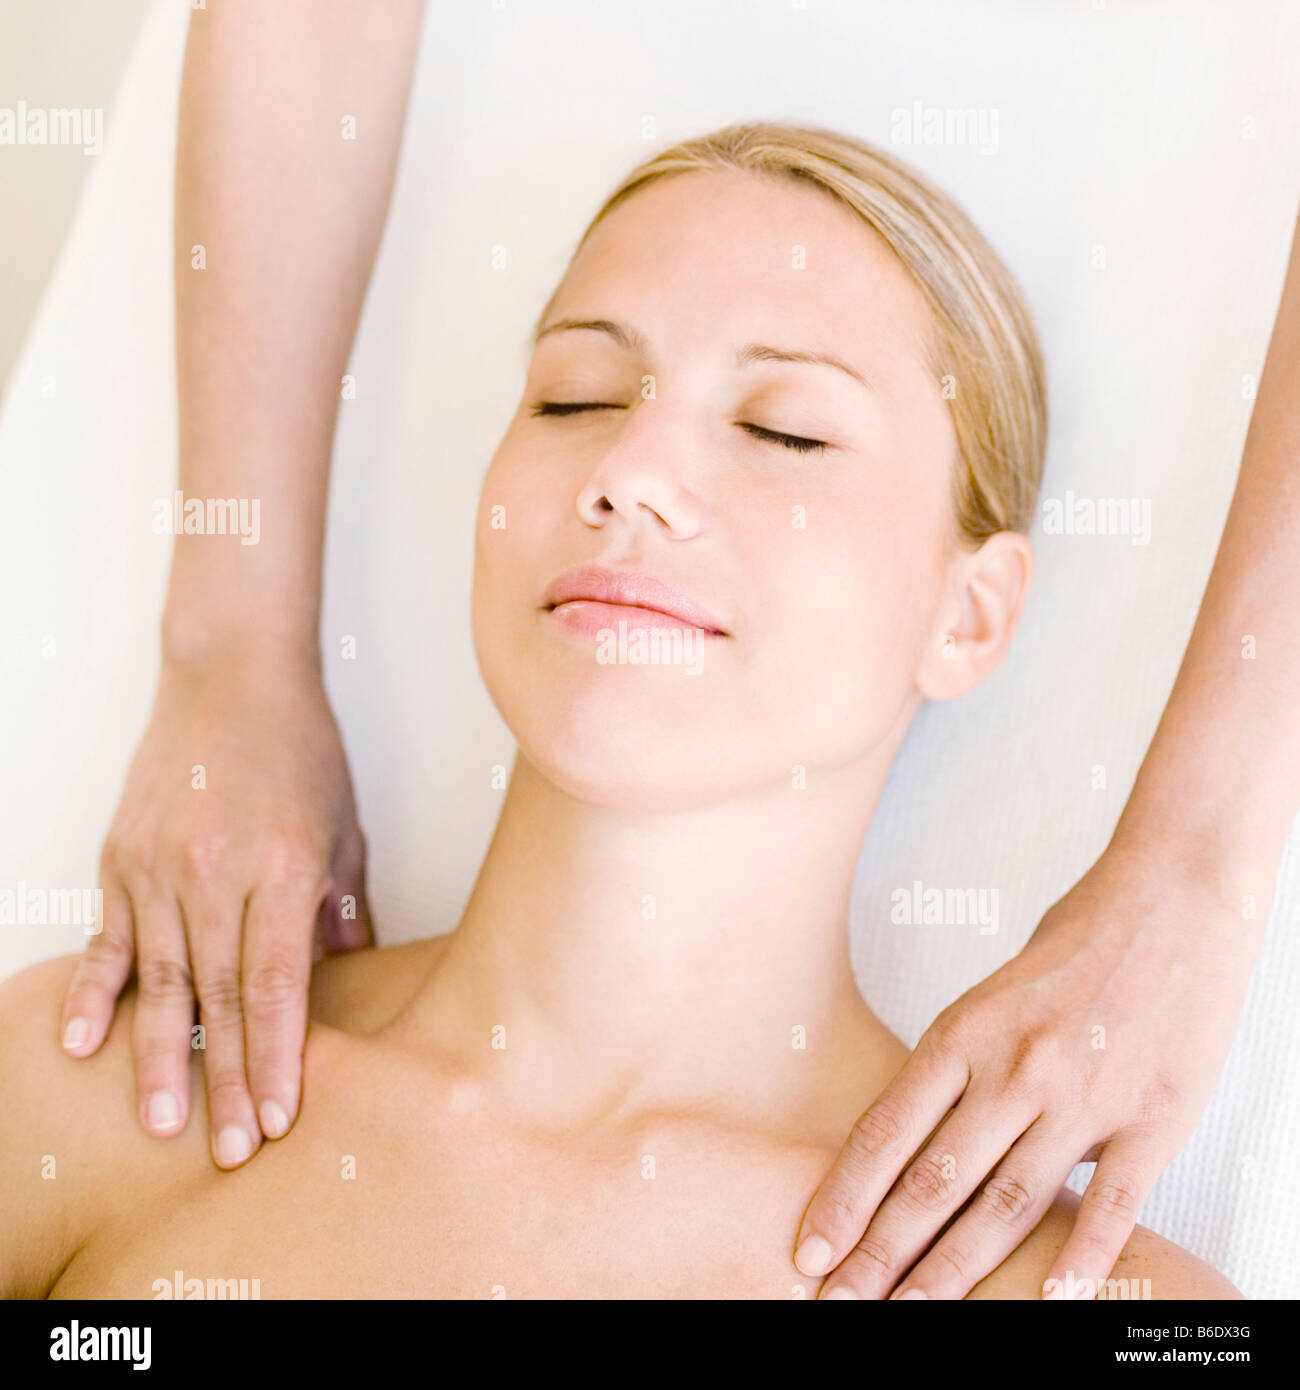 Donna ricevere massaggio della spalla che può alleviare i dolori muscolari o rigidità stimolando il flusso di sangue alla zona interessata Foto Stock